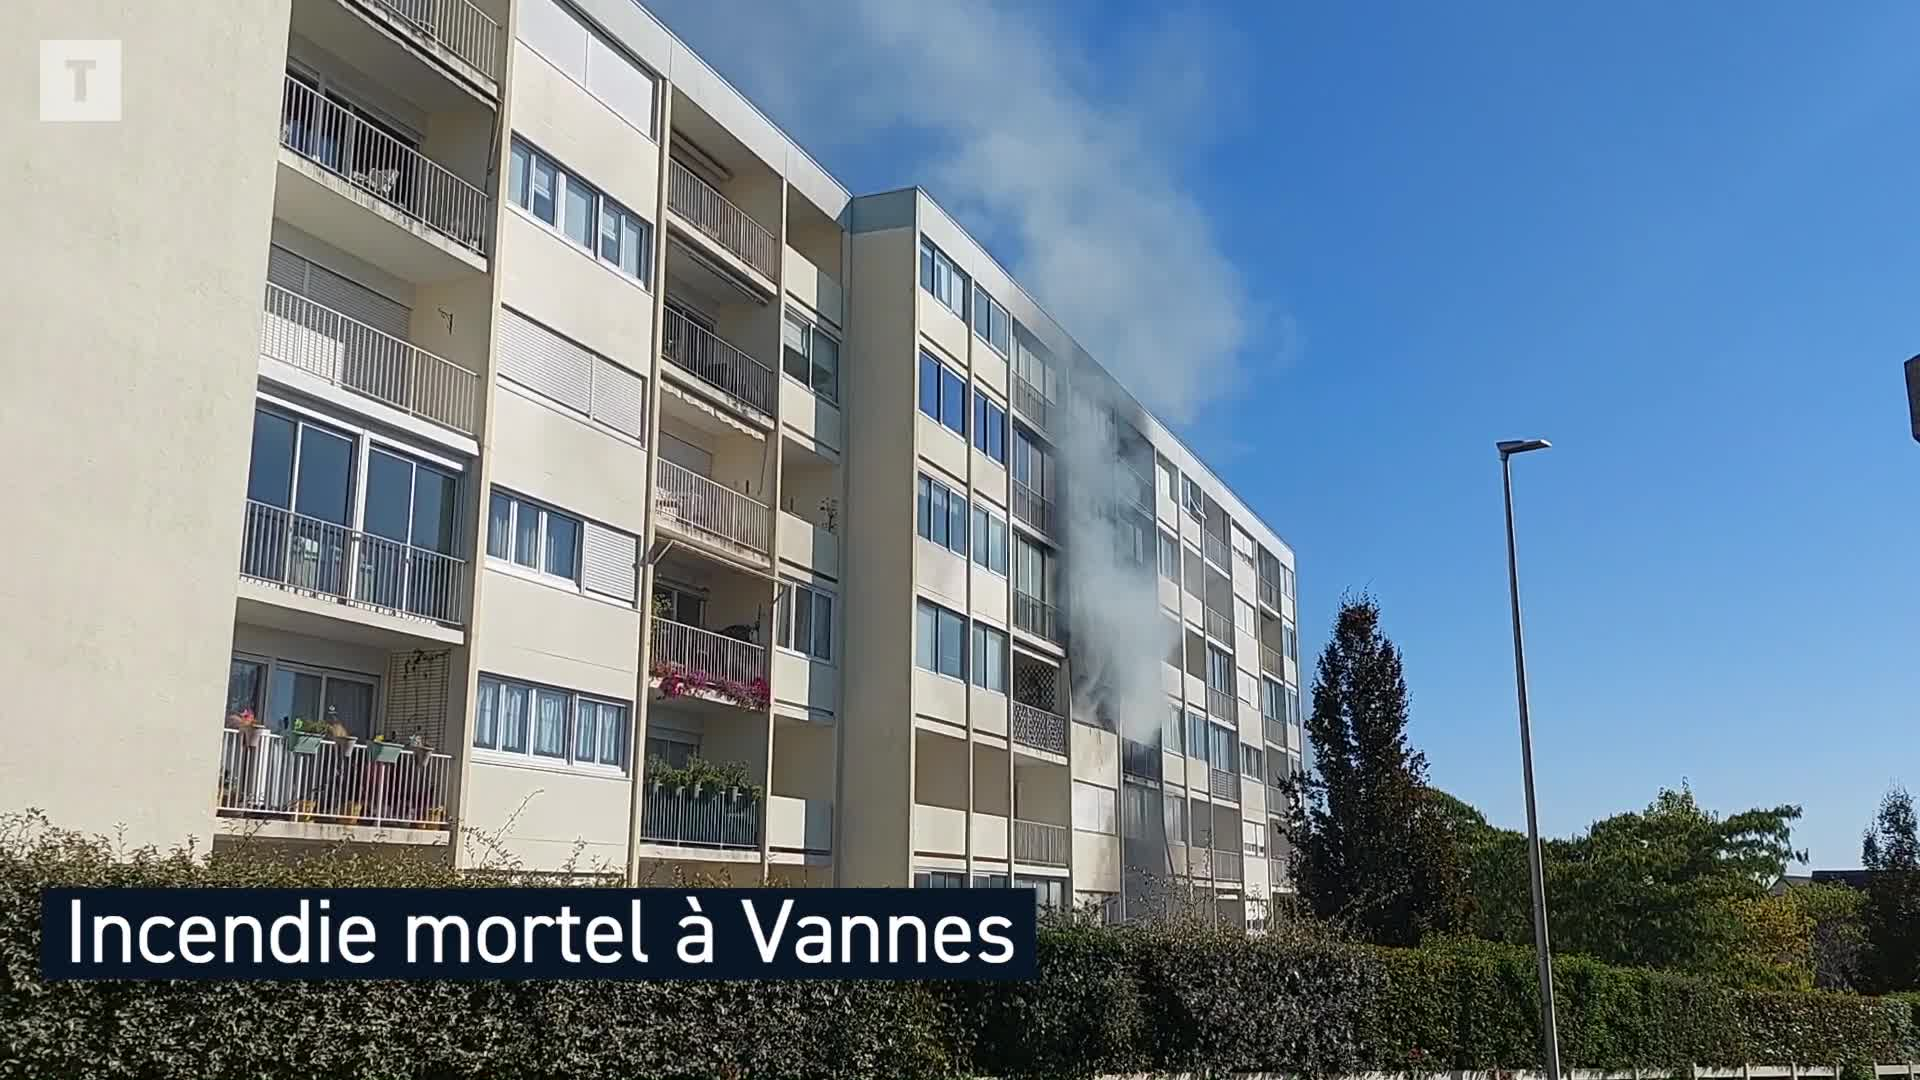 Une personne décédée dans un incendie d’appartement à Vannes (Le Télégramme)